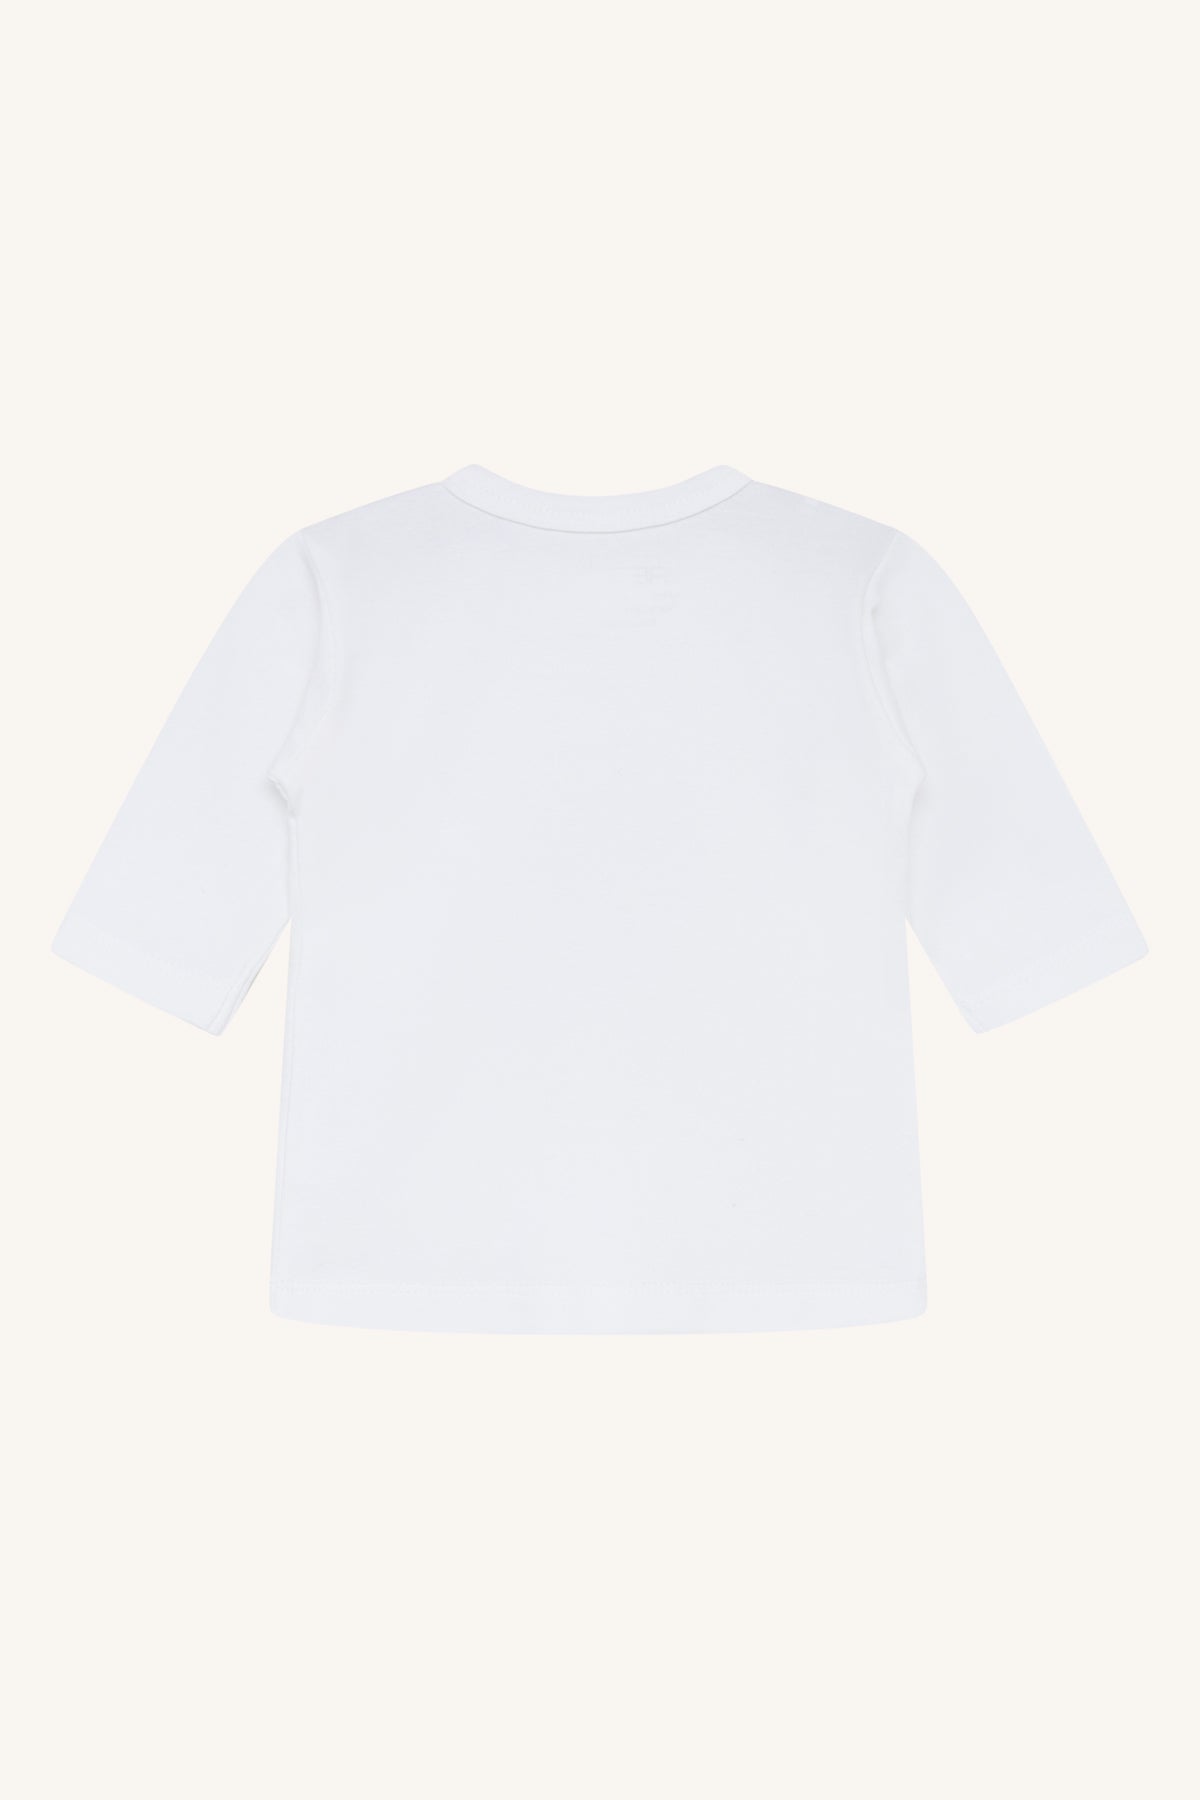 HCAlex - T-skjorte